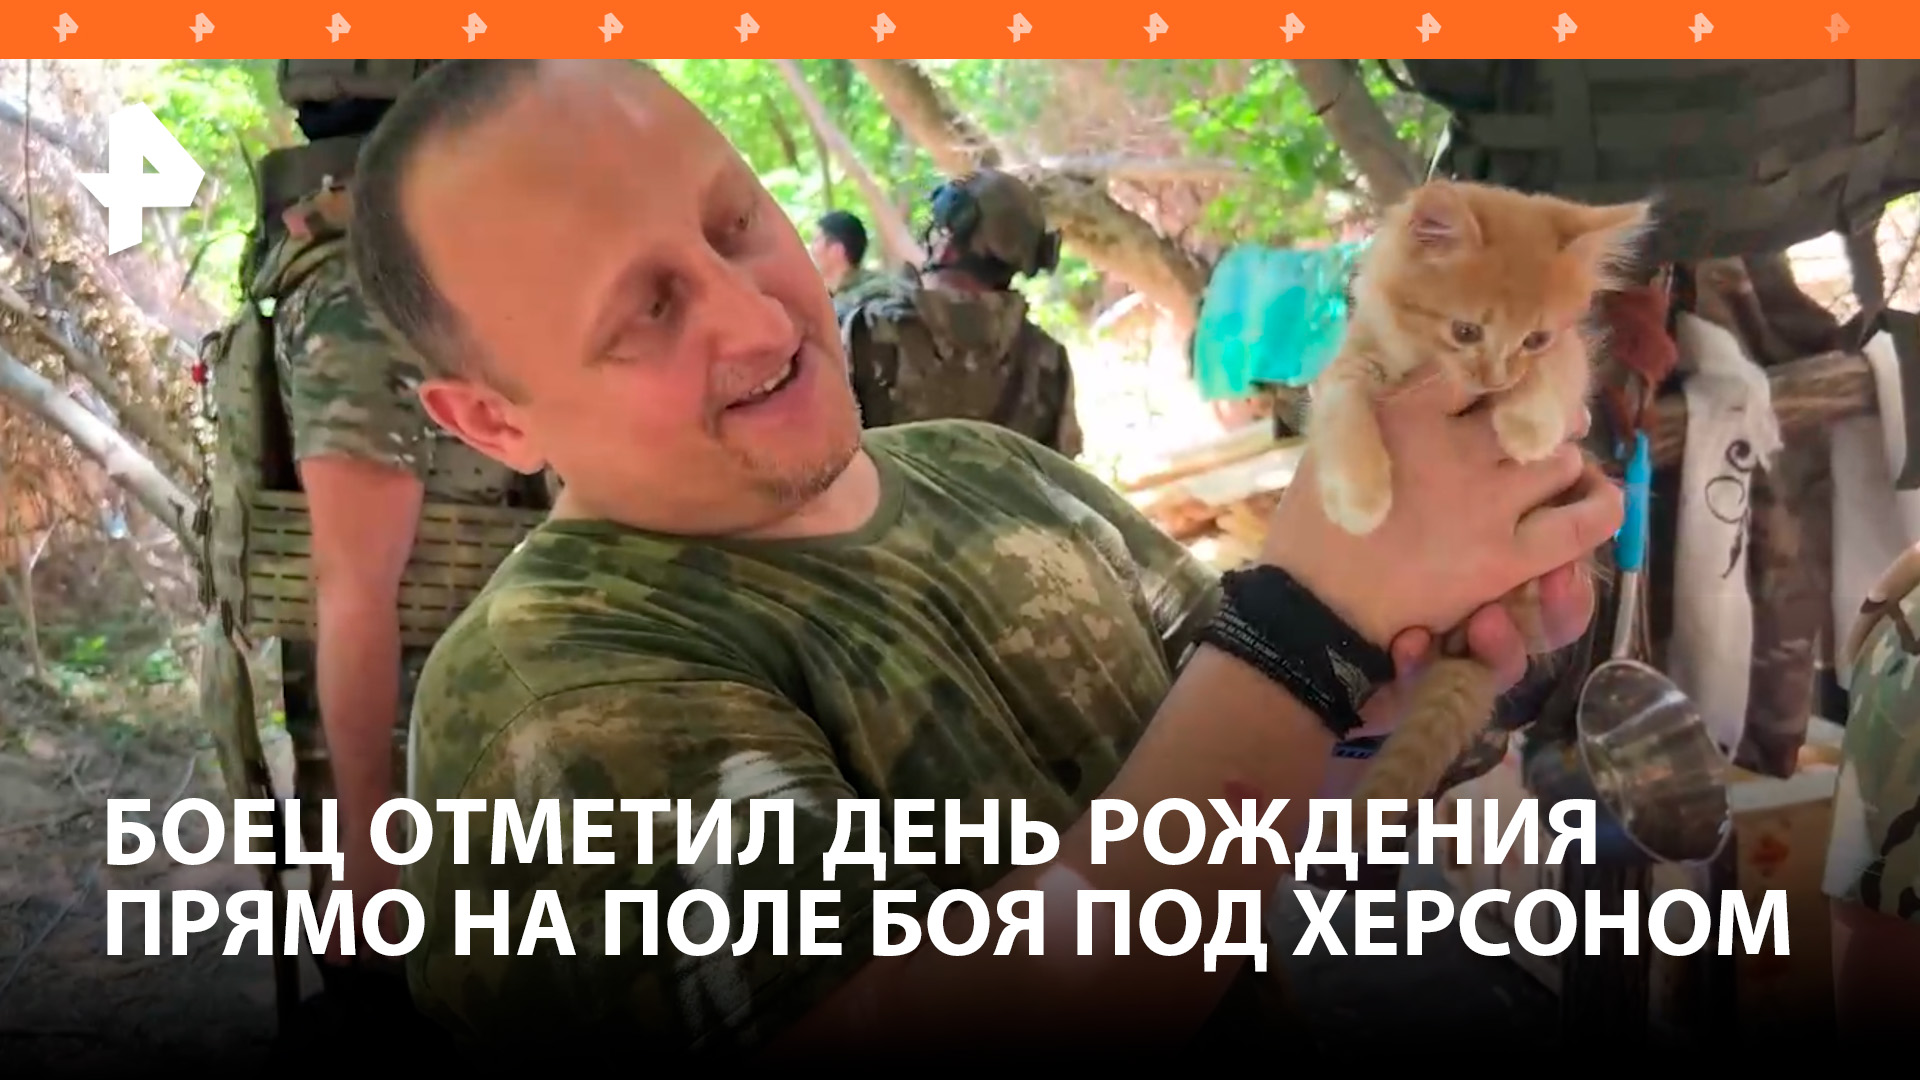 Российский боец отметил день рождения прямо на поле боя в Херсонской области / РЕН Новости